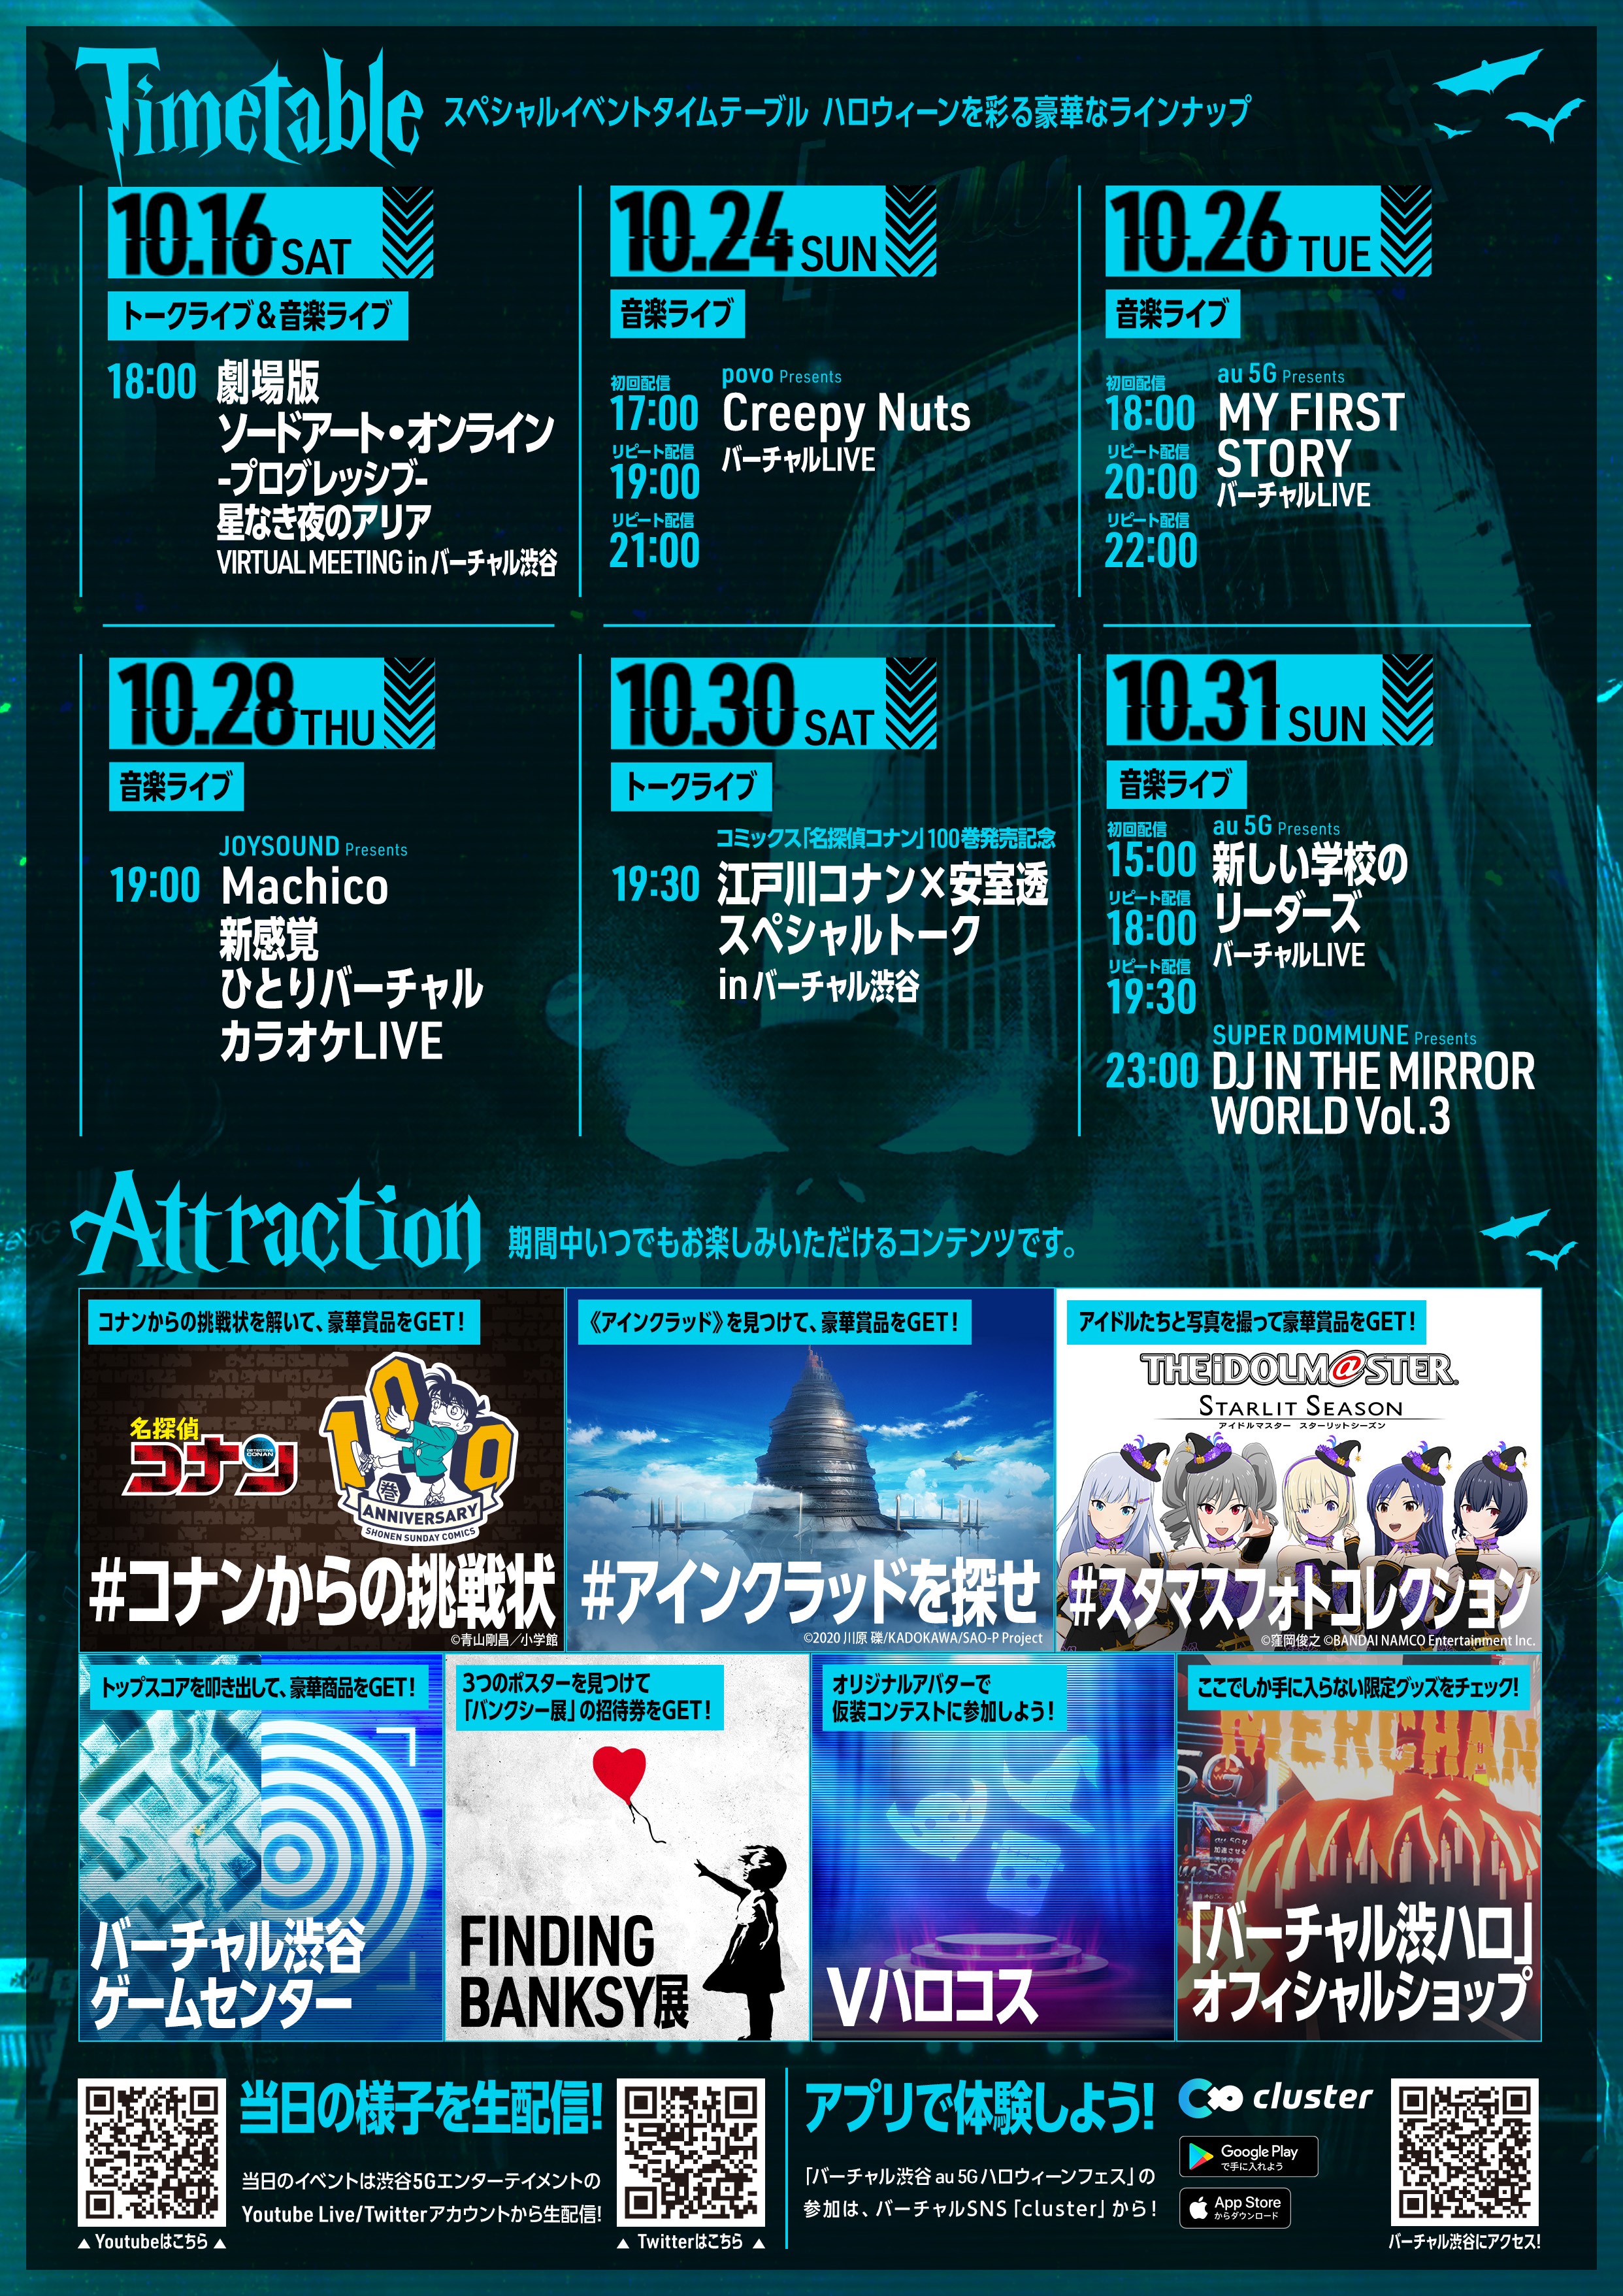 「バーチャル渋谷 au 5G ハロウィーンフェス2021」JOYSOUND Presents　“Machico 新感覚ひとりバーチャルカラオケLIVE”を開催のサブ画像4